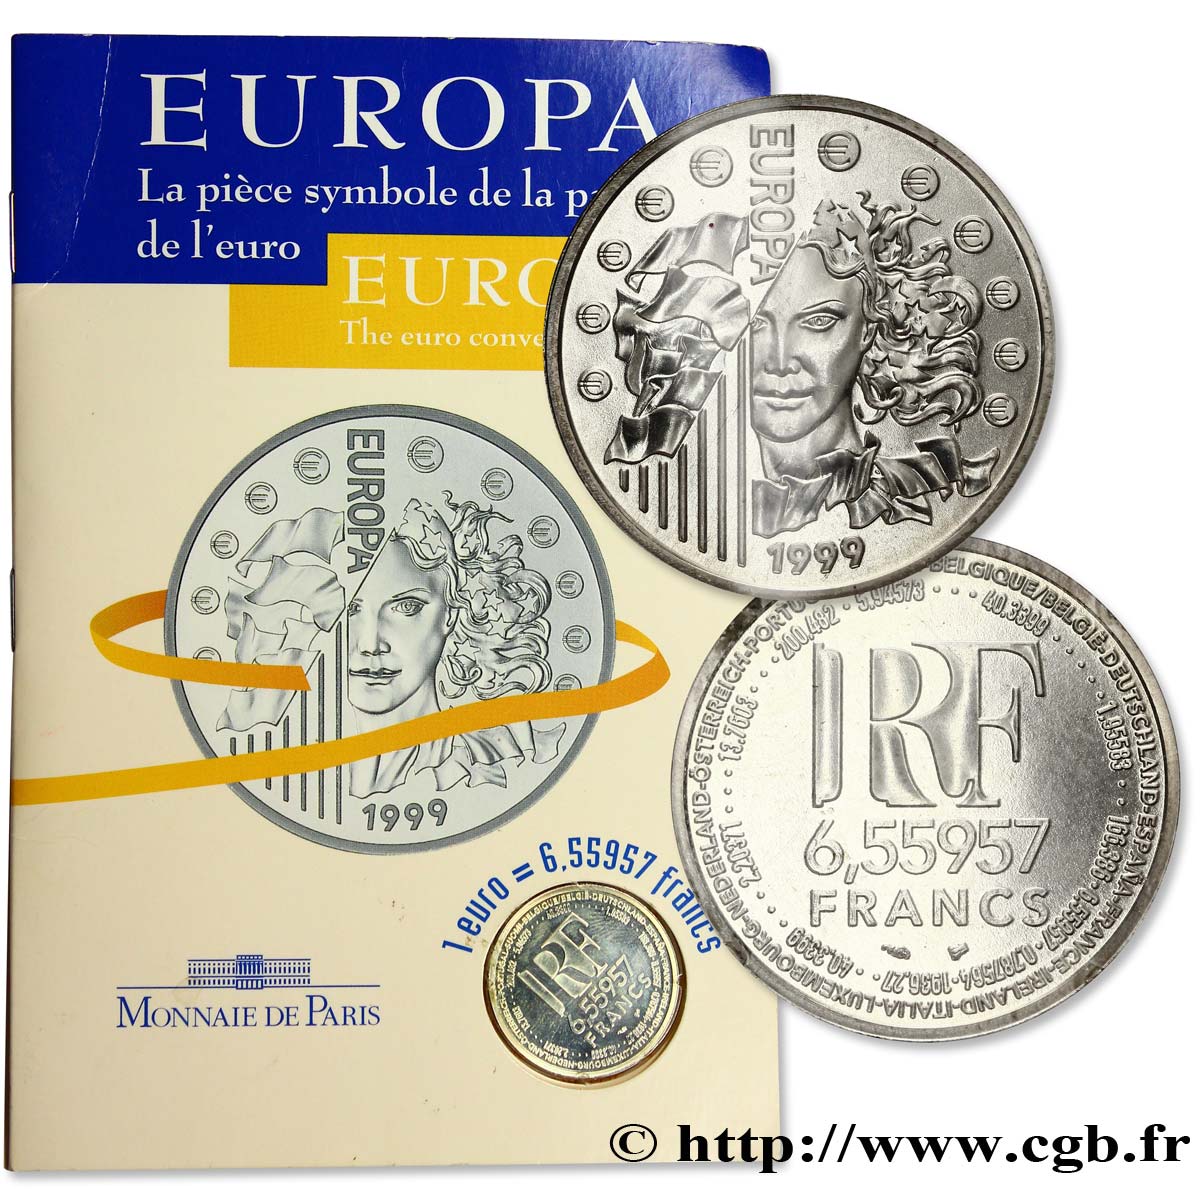 Brillant Universel 6,55957 francs - La parité 1999 Paris F.1250 2 ST 